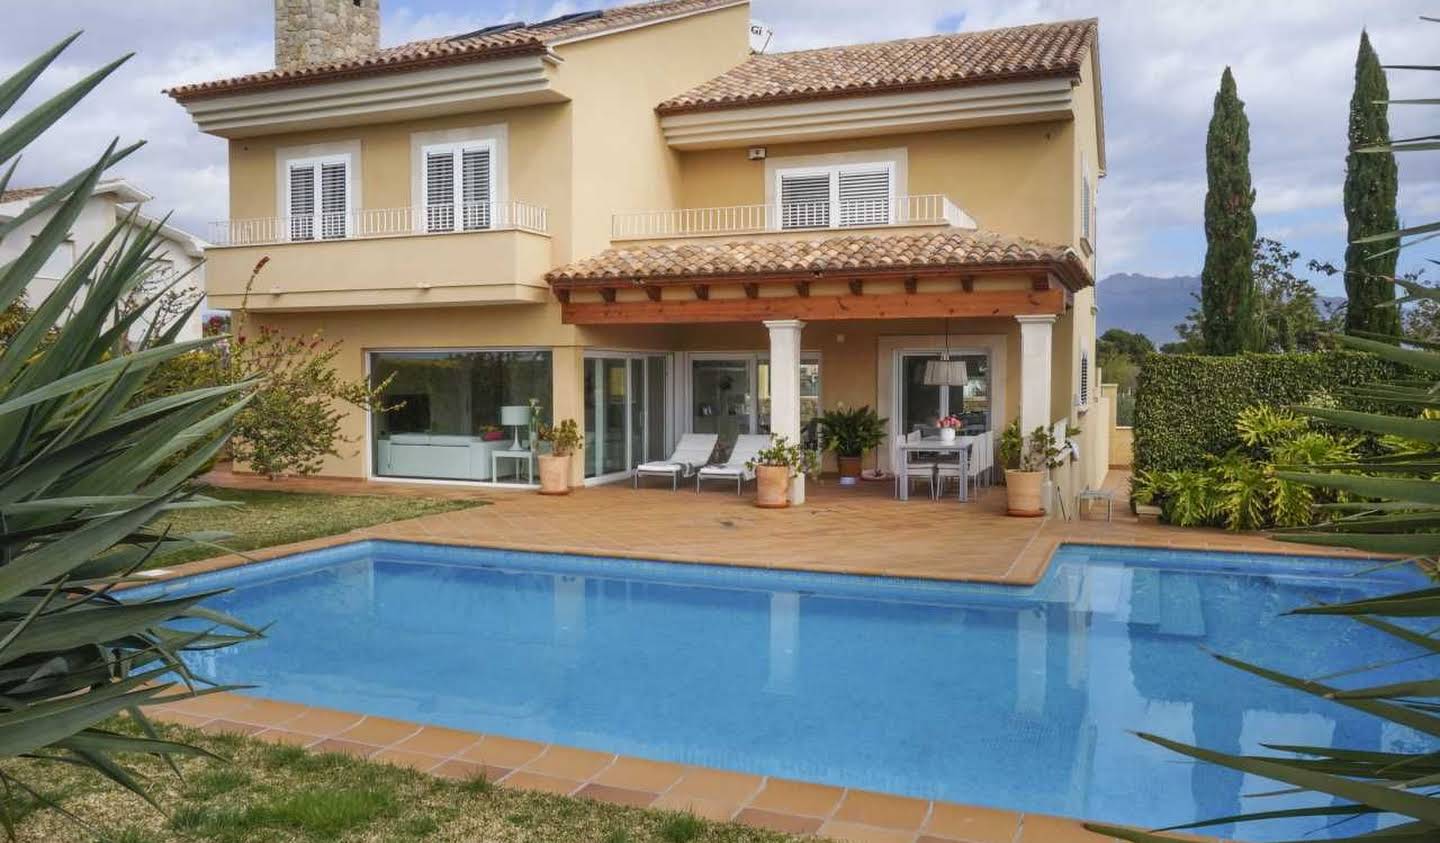 Property with pool L'Alfàs del Pi